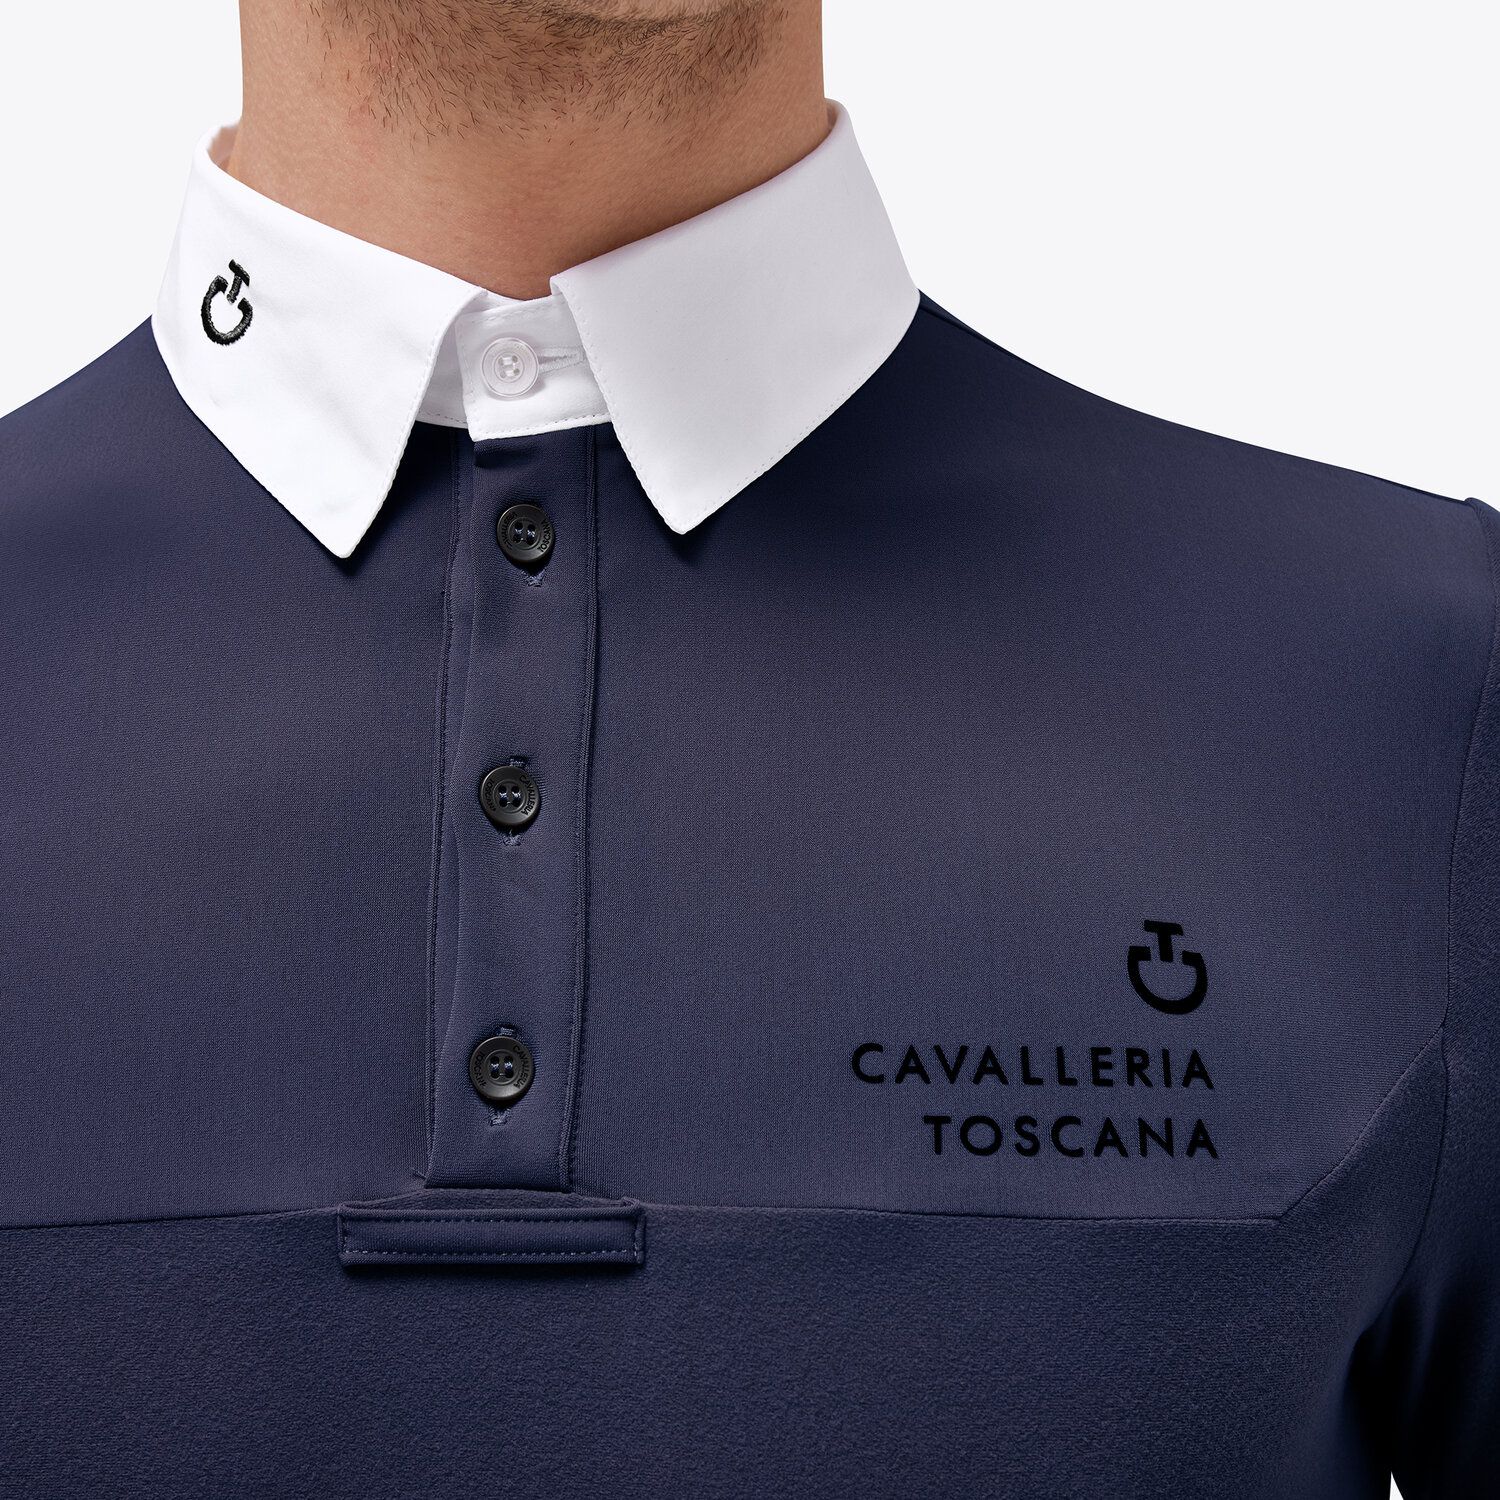 Cavalleria Toscana Men's competition polo shirt NAVY-3